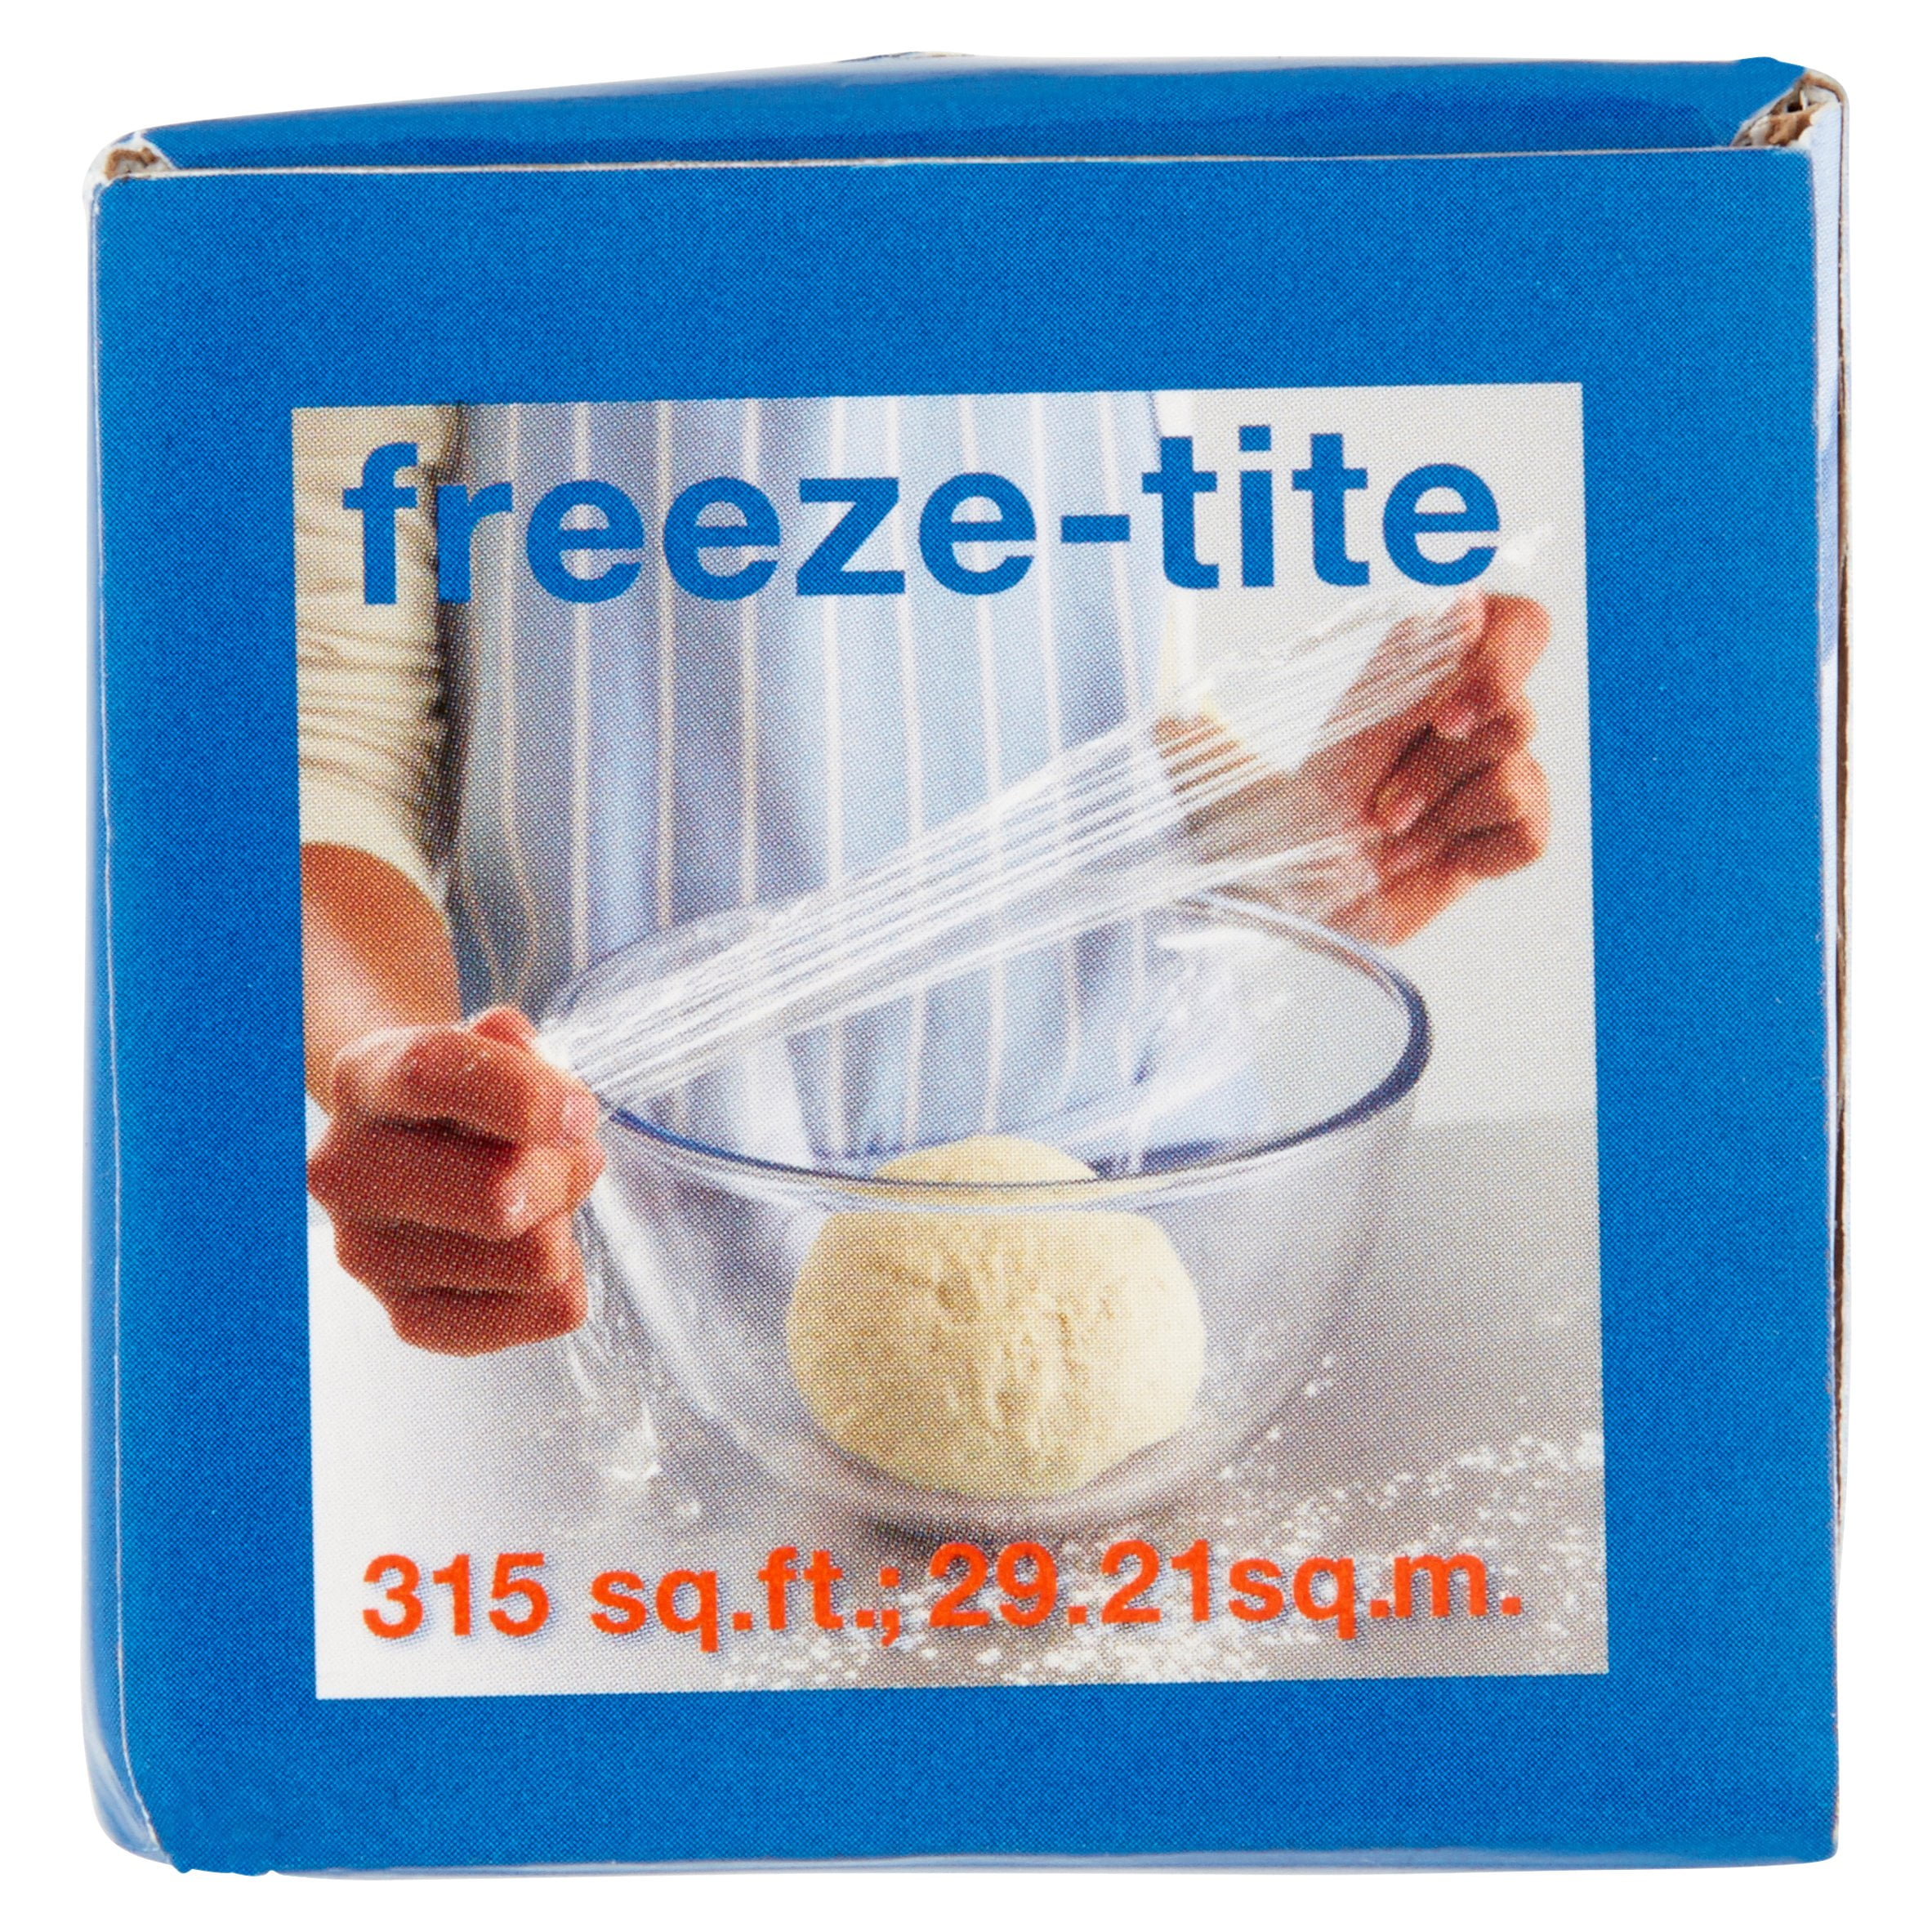 Stretch-Tite Freeze-tite Plastic Food Wrap 15inch w - Azure Standard